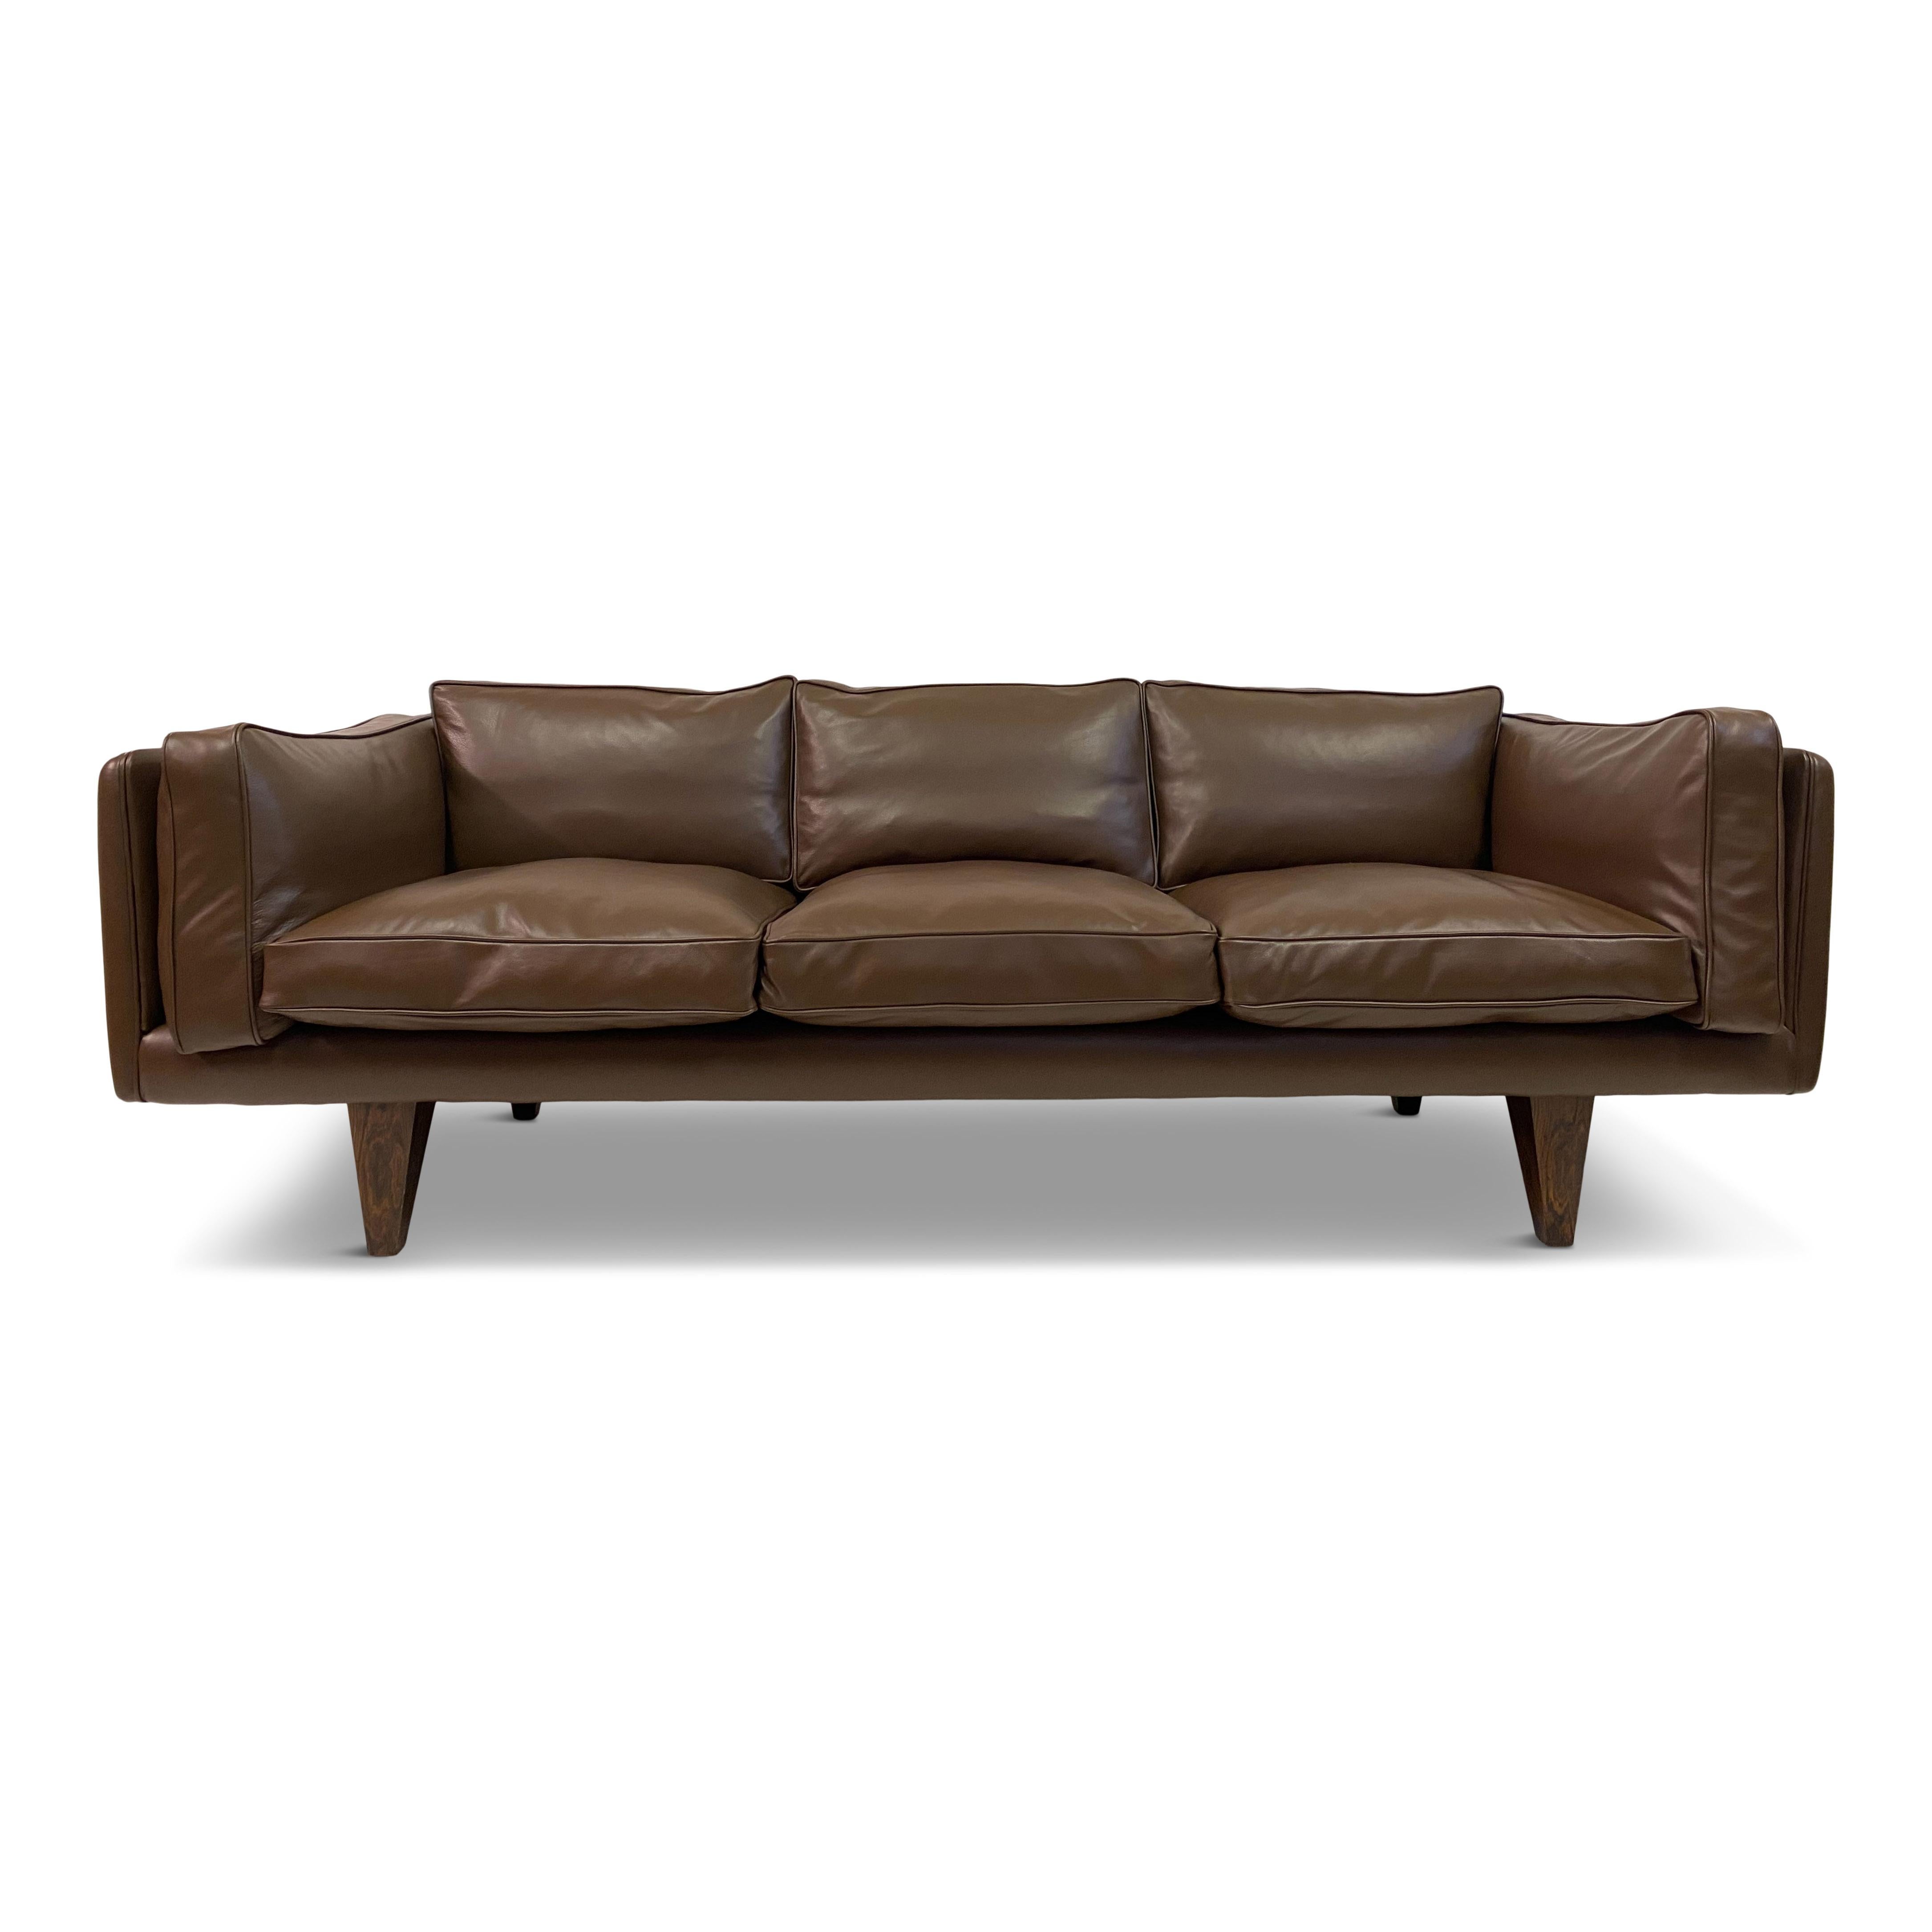 Mid-Century Modern 1960s Danish V11 Sofa By Illum WIkkelso for Holger Christiansen in Brown Leather